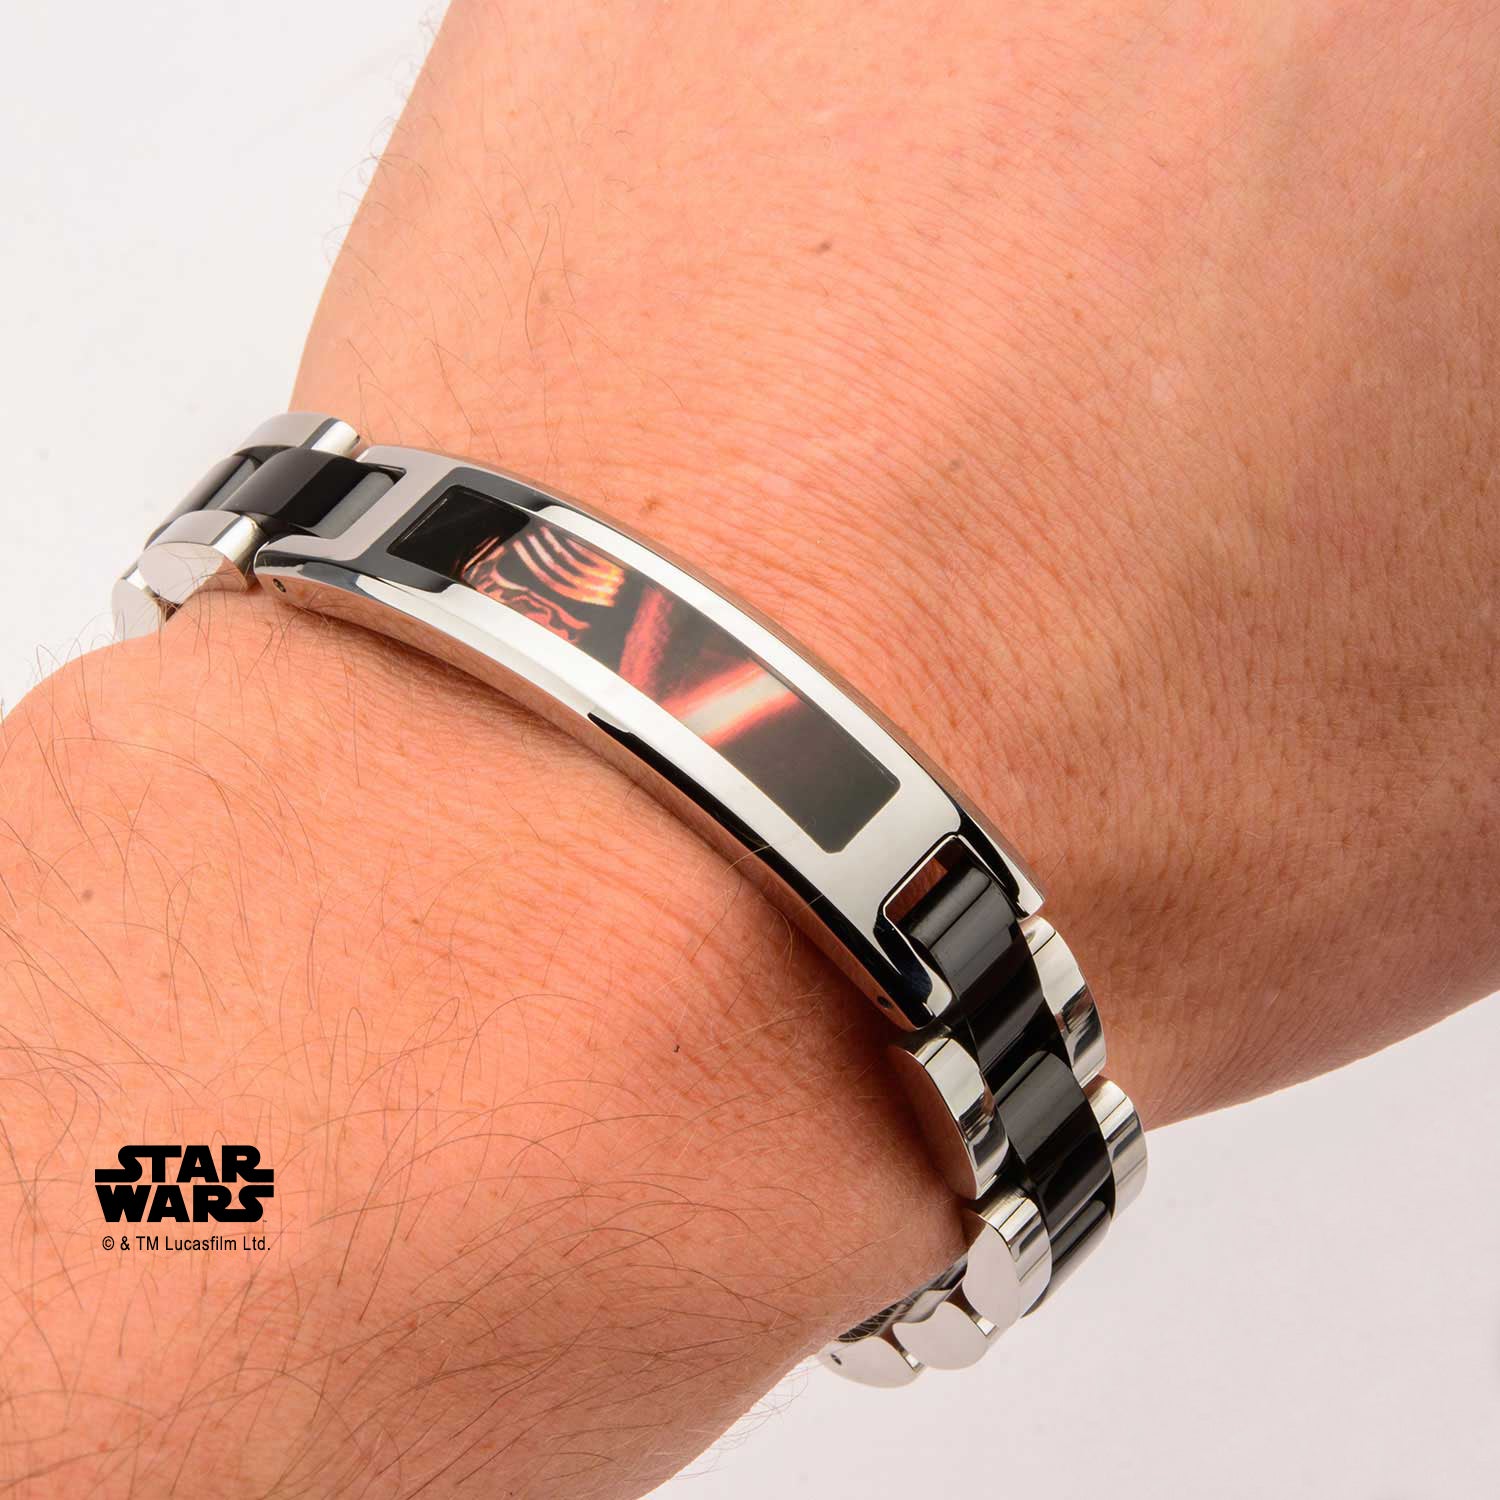 Star Wars Episode 7 Lead Villain Kylo Ren ID Plate Link Bracelet